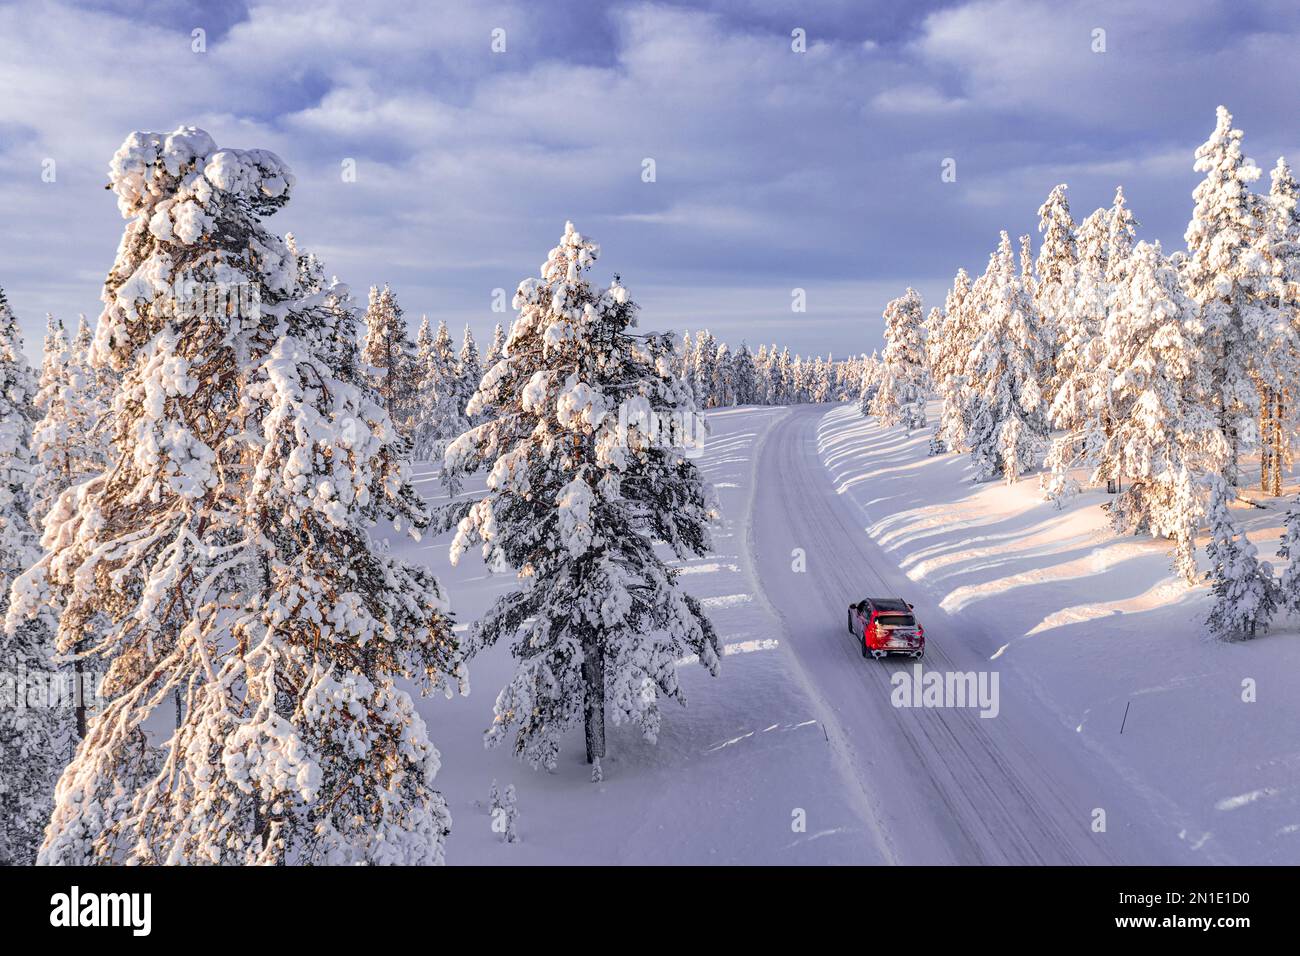 Vista ad angolo elevato di un veicolo fuoristrada che si trova su una pista ghiacciata tra alberi innevati, Kangos, Lapponia, Svezia, Scandinavia, Europa Foto Stock